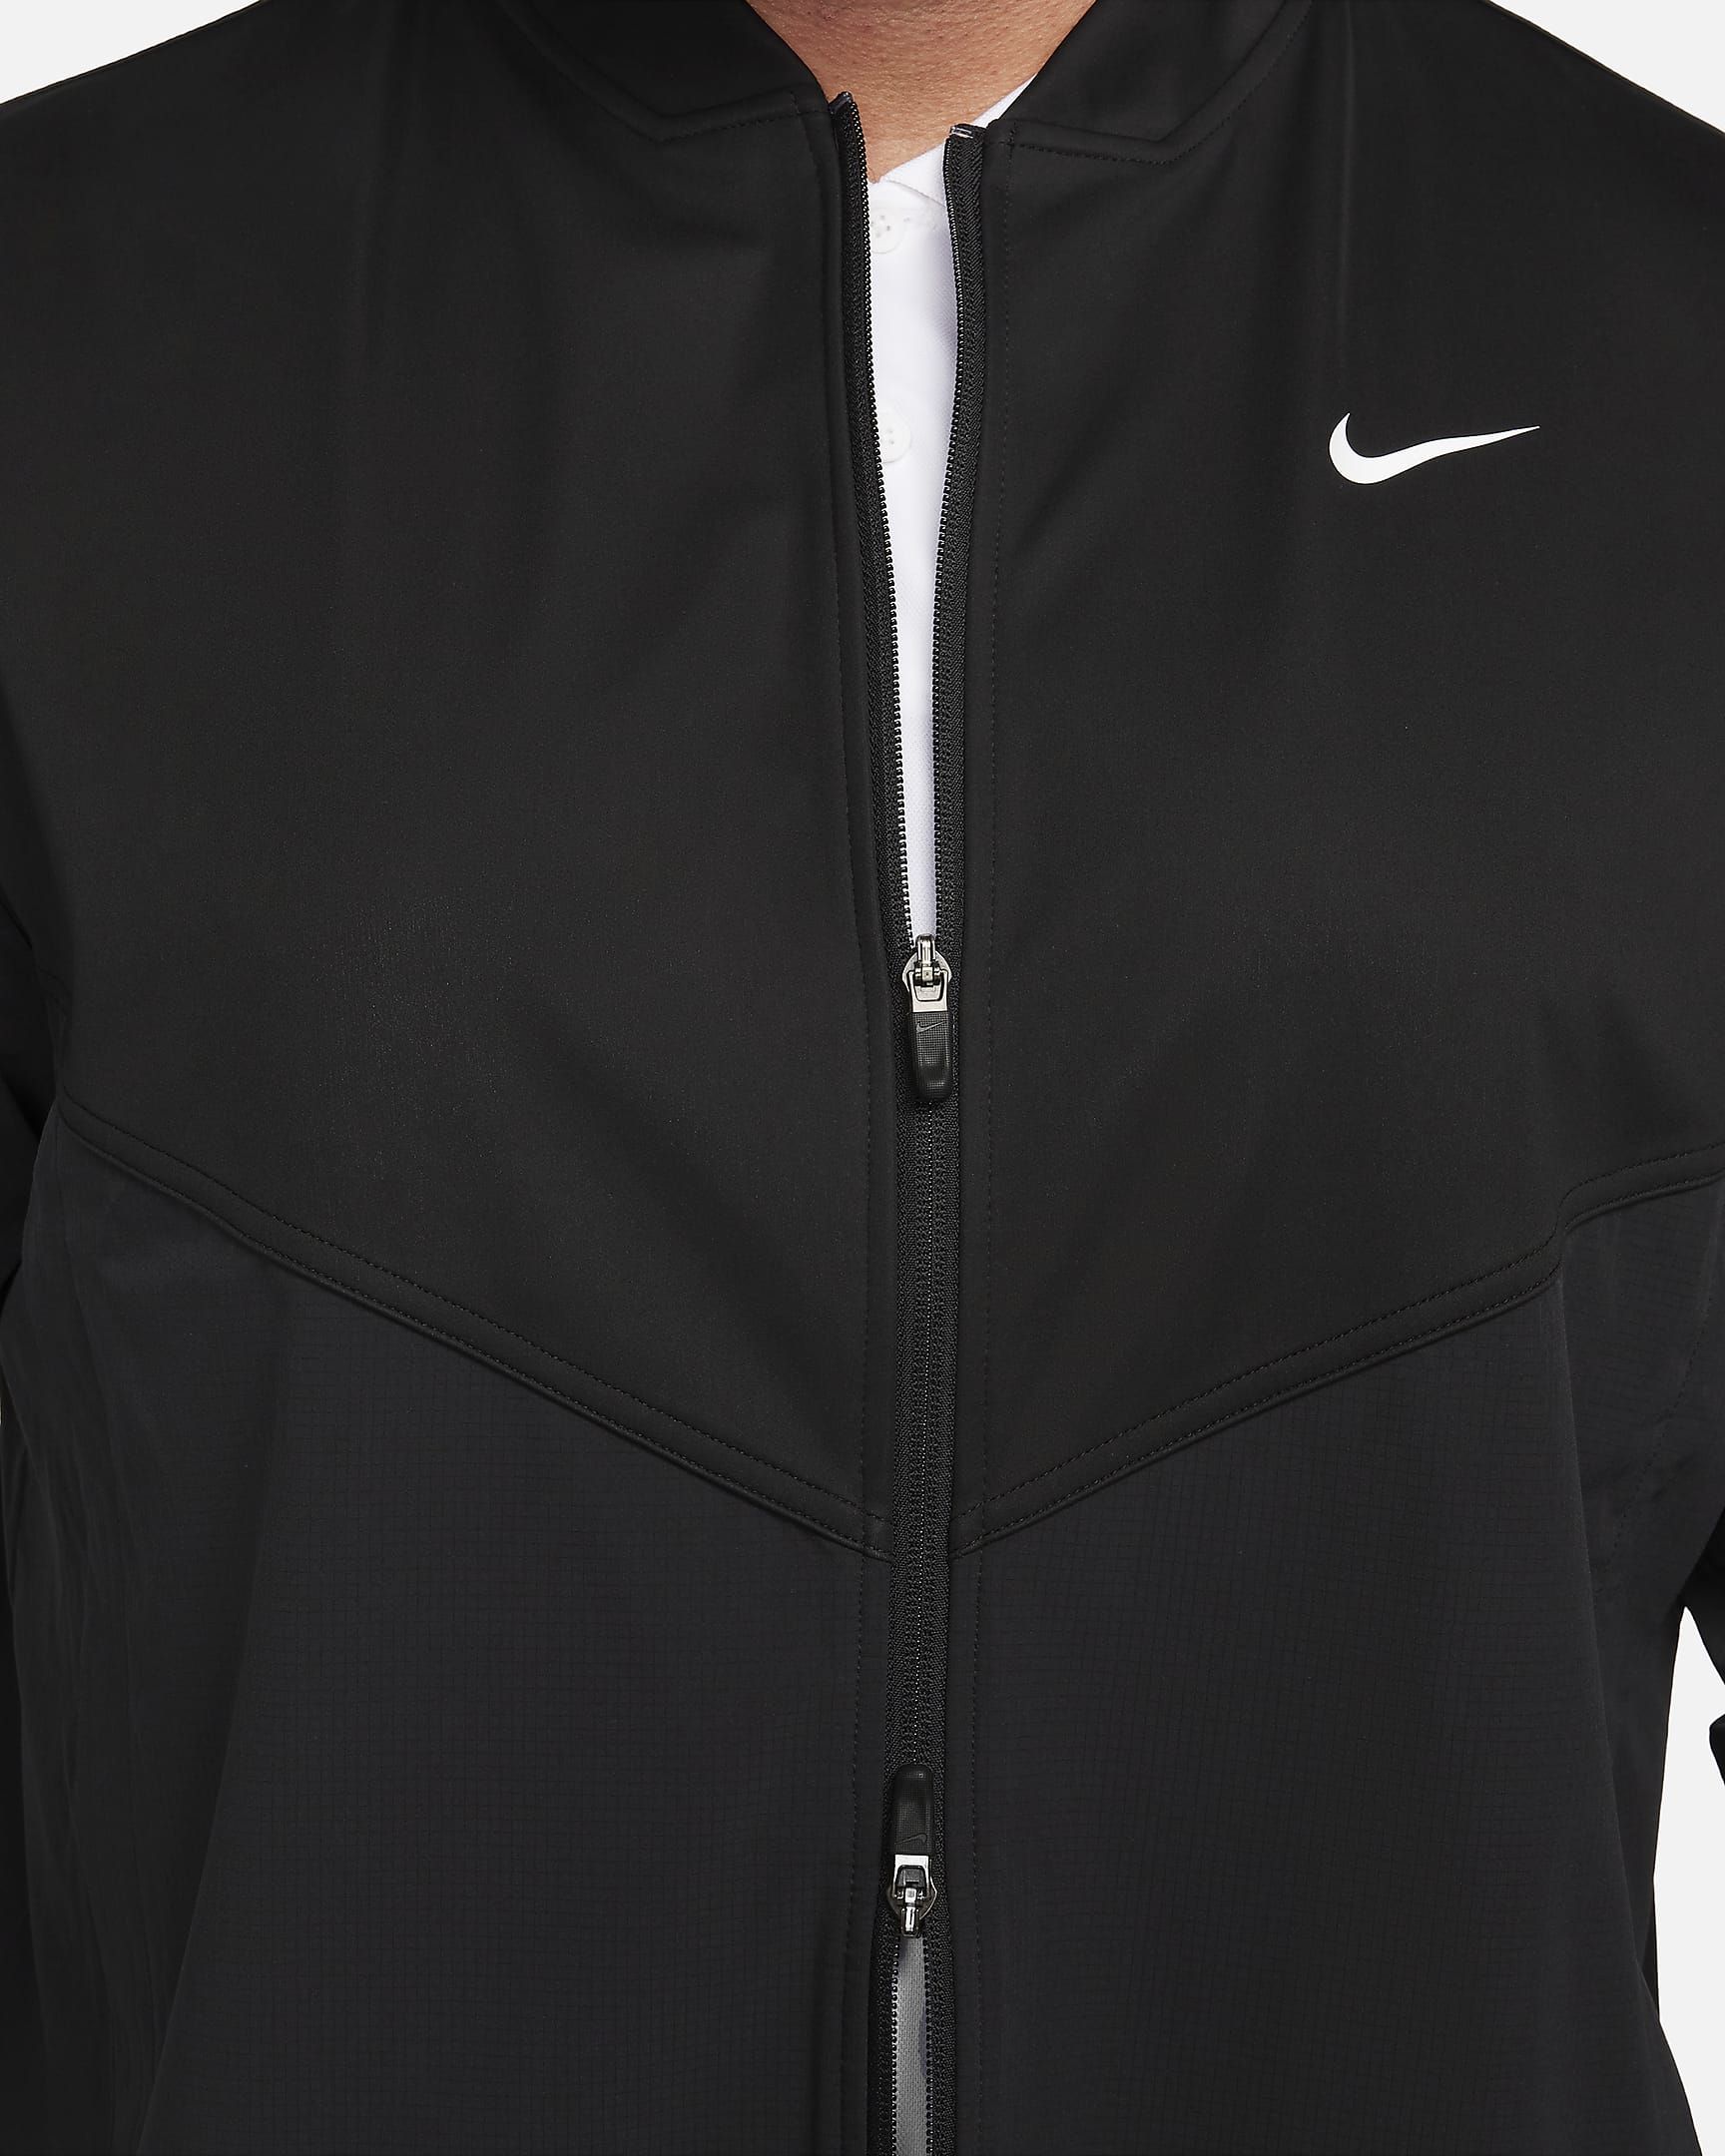 Veste de golf Nike Tour Essential pour homme - Noir/Noir/Blanc